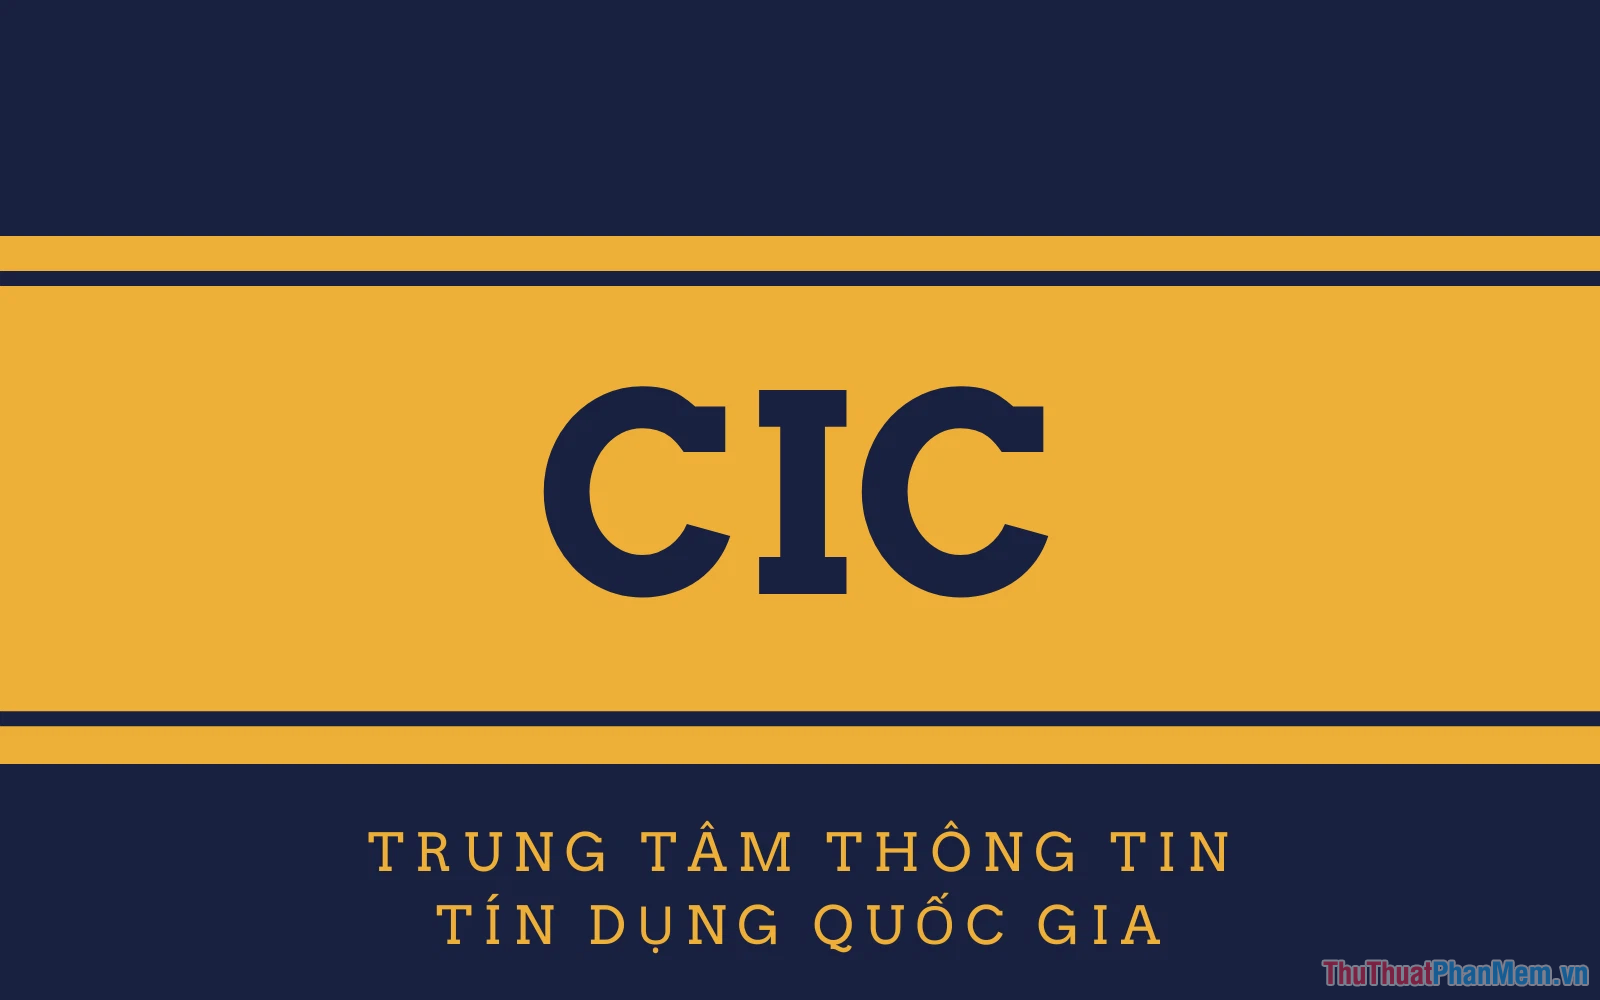 CIC - Credit Information Center là Trung Tâm Thông Tin Tín Dụng trực thuộc Ngân Hàng Nhà Nước Việt Nam